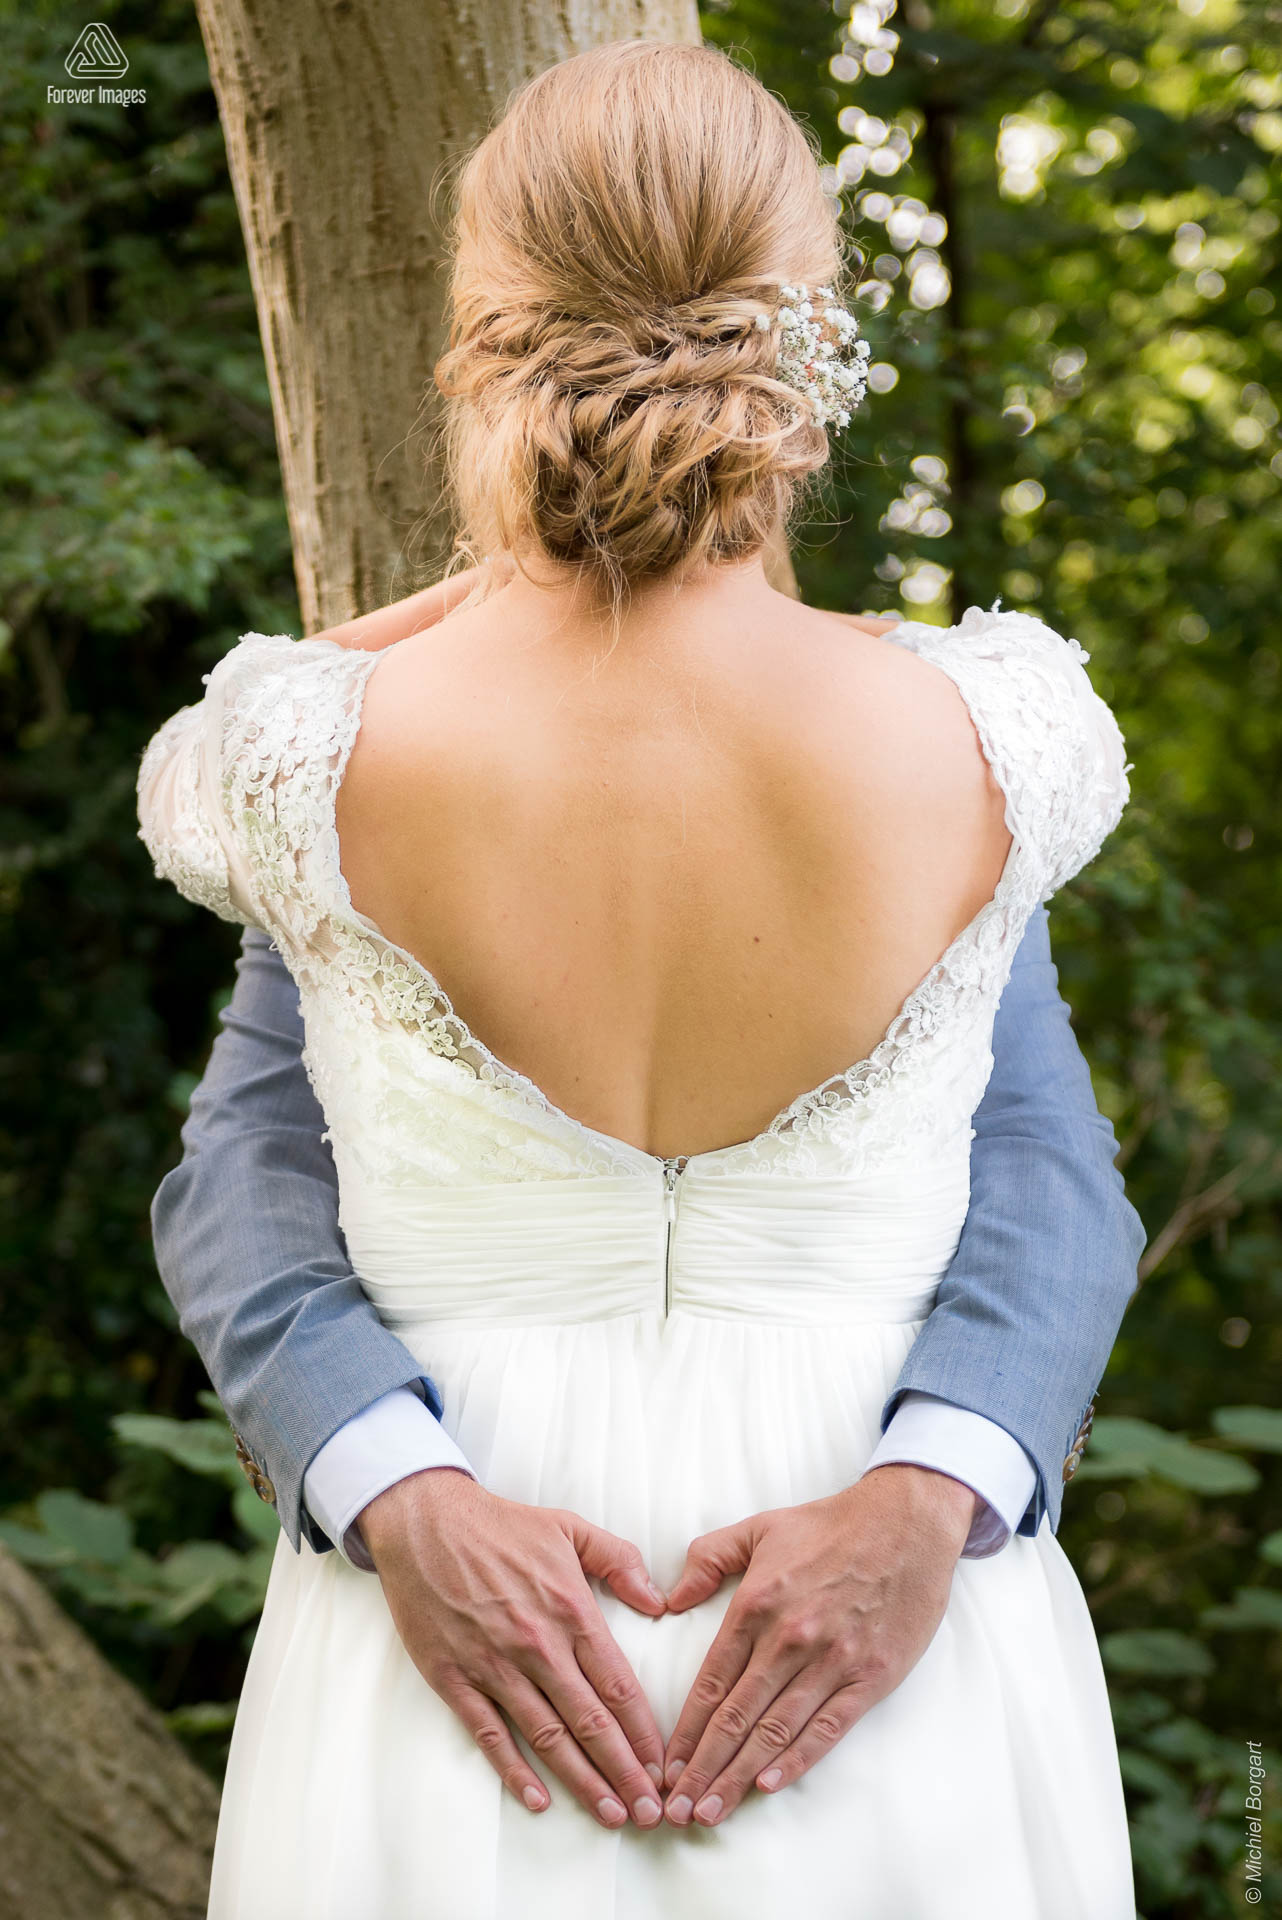 Bruidsfoto omarming waarbij de handen van de bruidegom hartje vormen | Bart Eefje Mijland | Bruidsfotograaf Michiel Borgart - Forever Images.